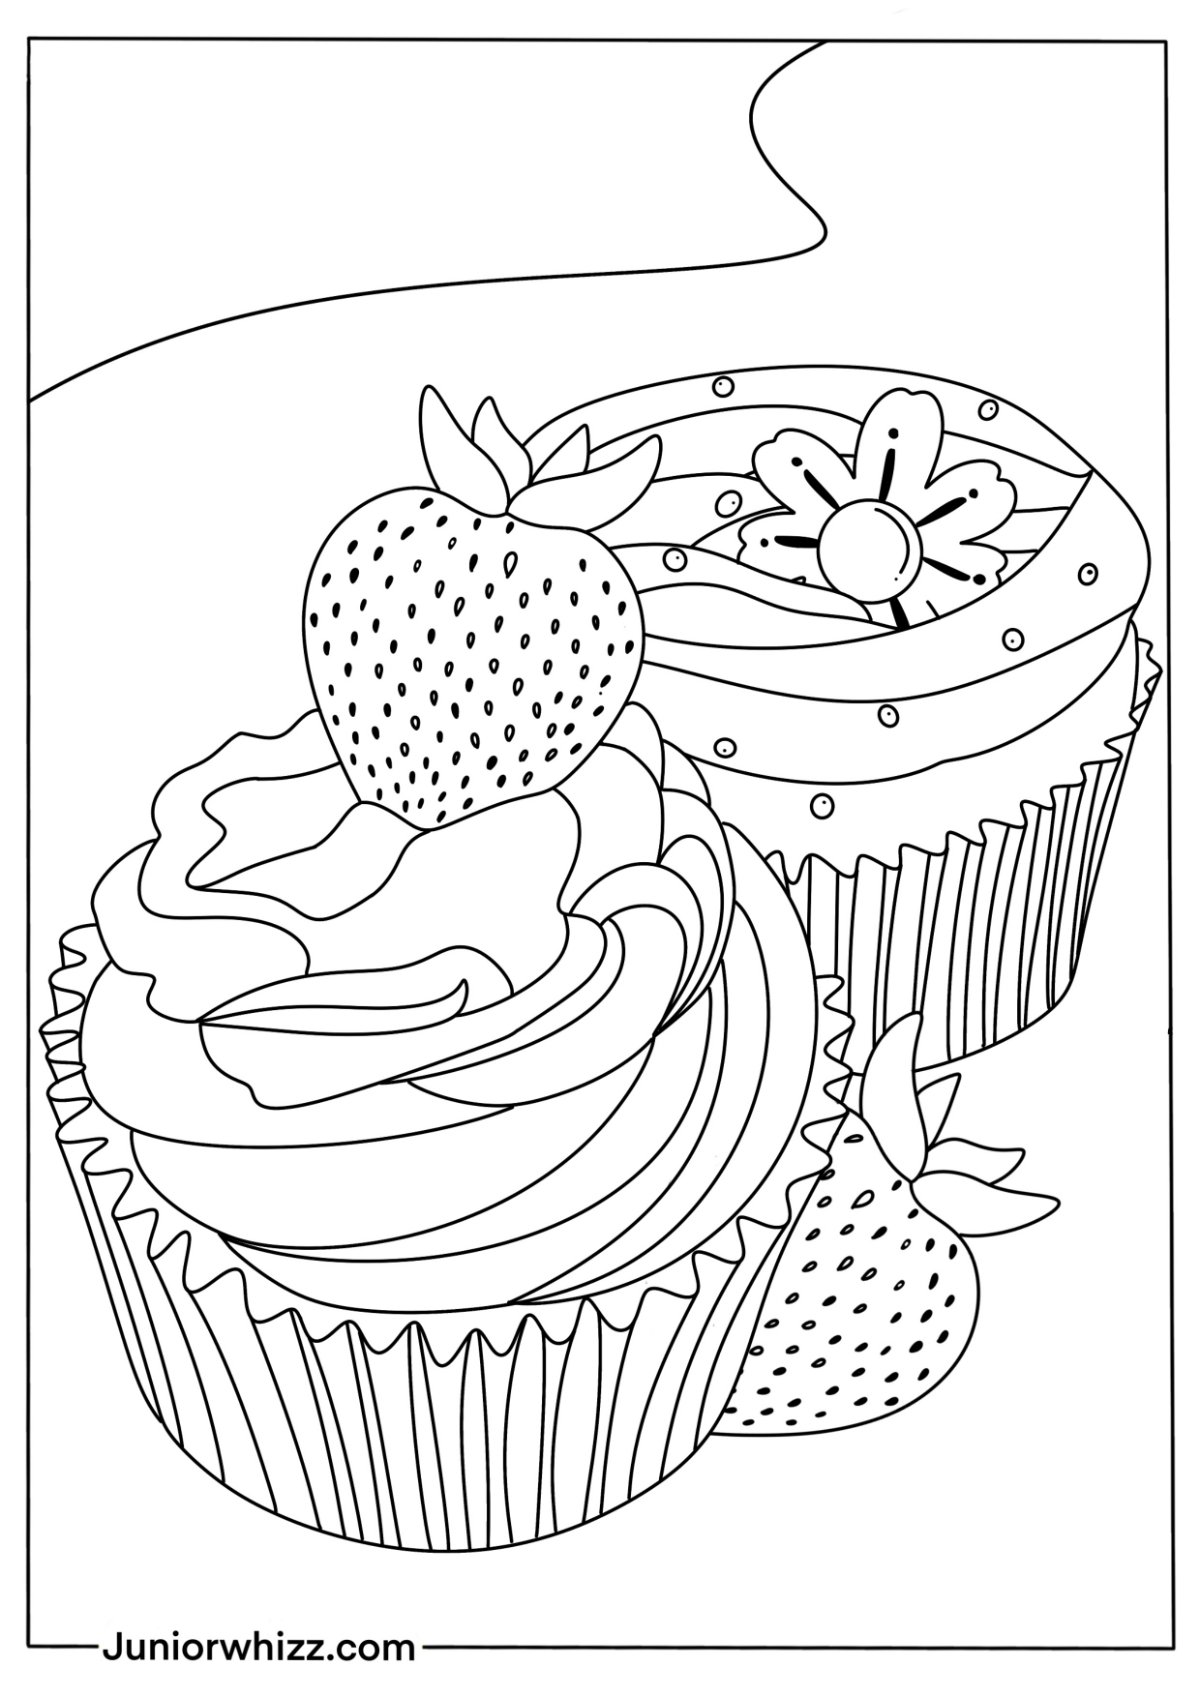 Cupcake Coloring Book for Kids Digital Download / Children Coloring Pages /  Kids Cute Coloring Book Printable PDF / Dessert Book for Kid 